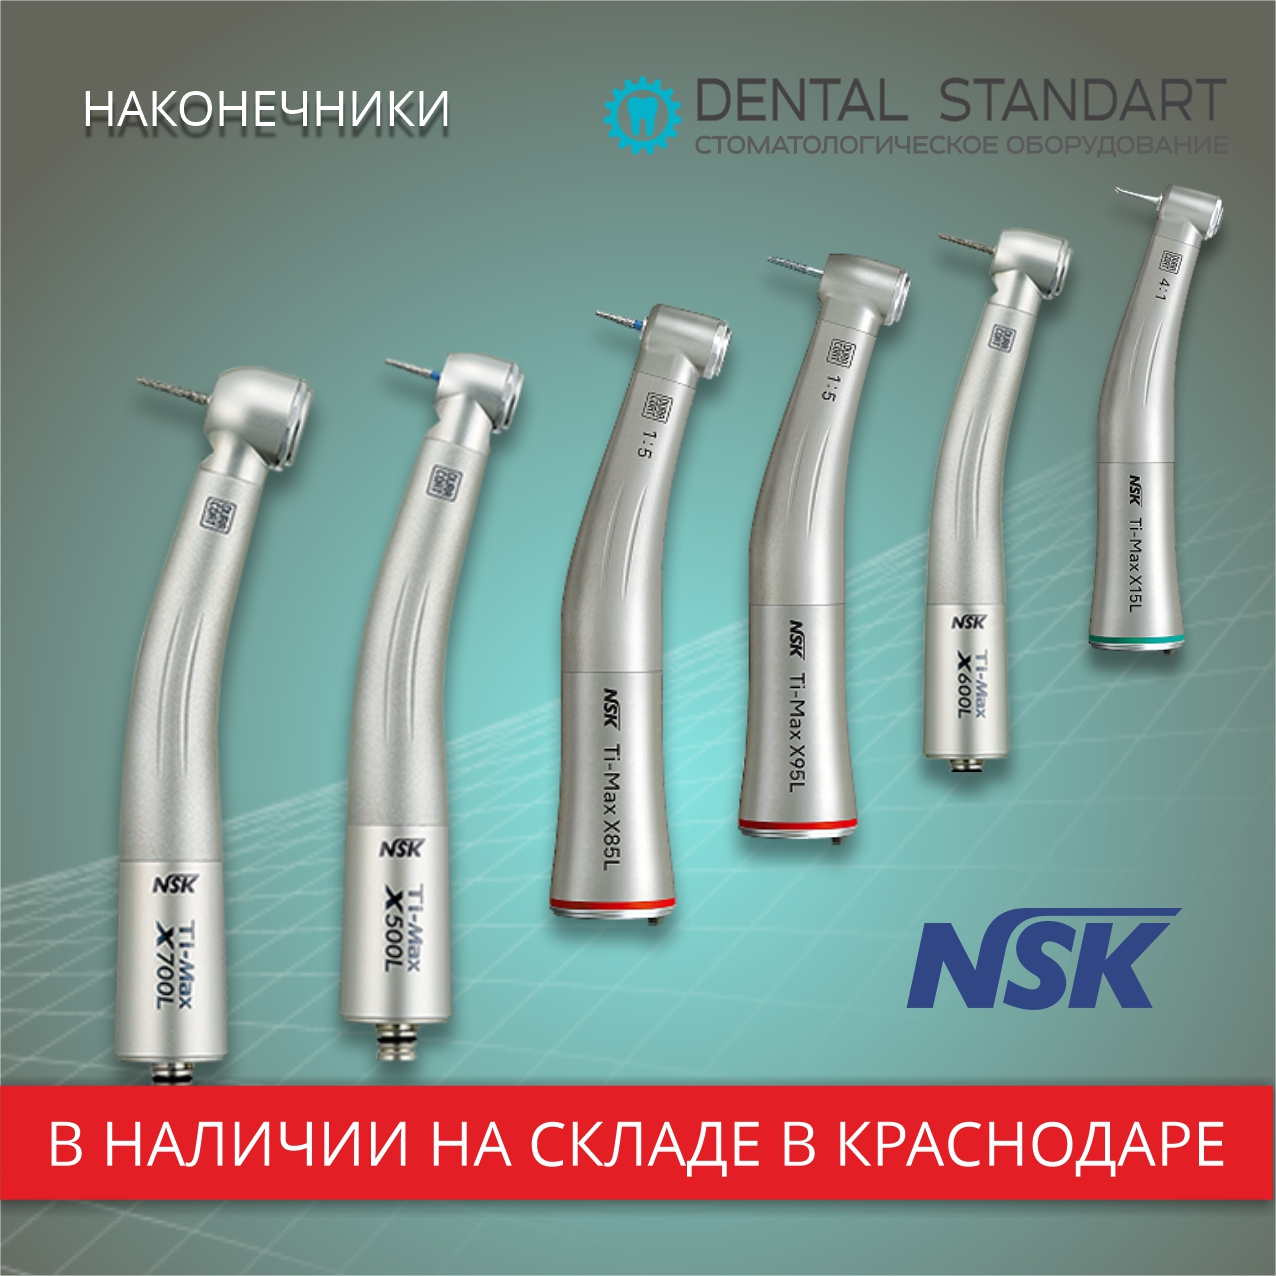 Стоматологические наконечники NSK на складе медицинского оборудования в Краснодаре.